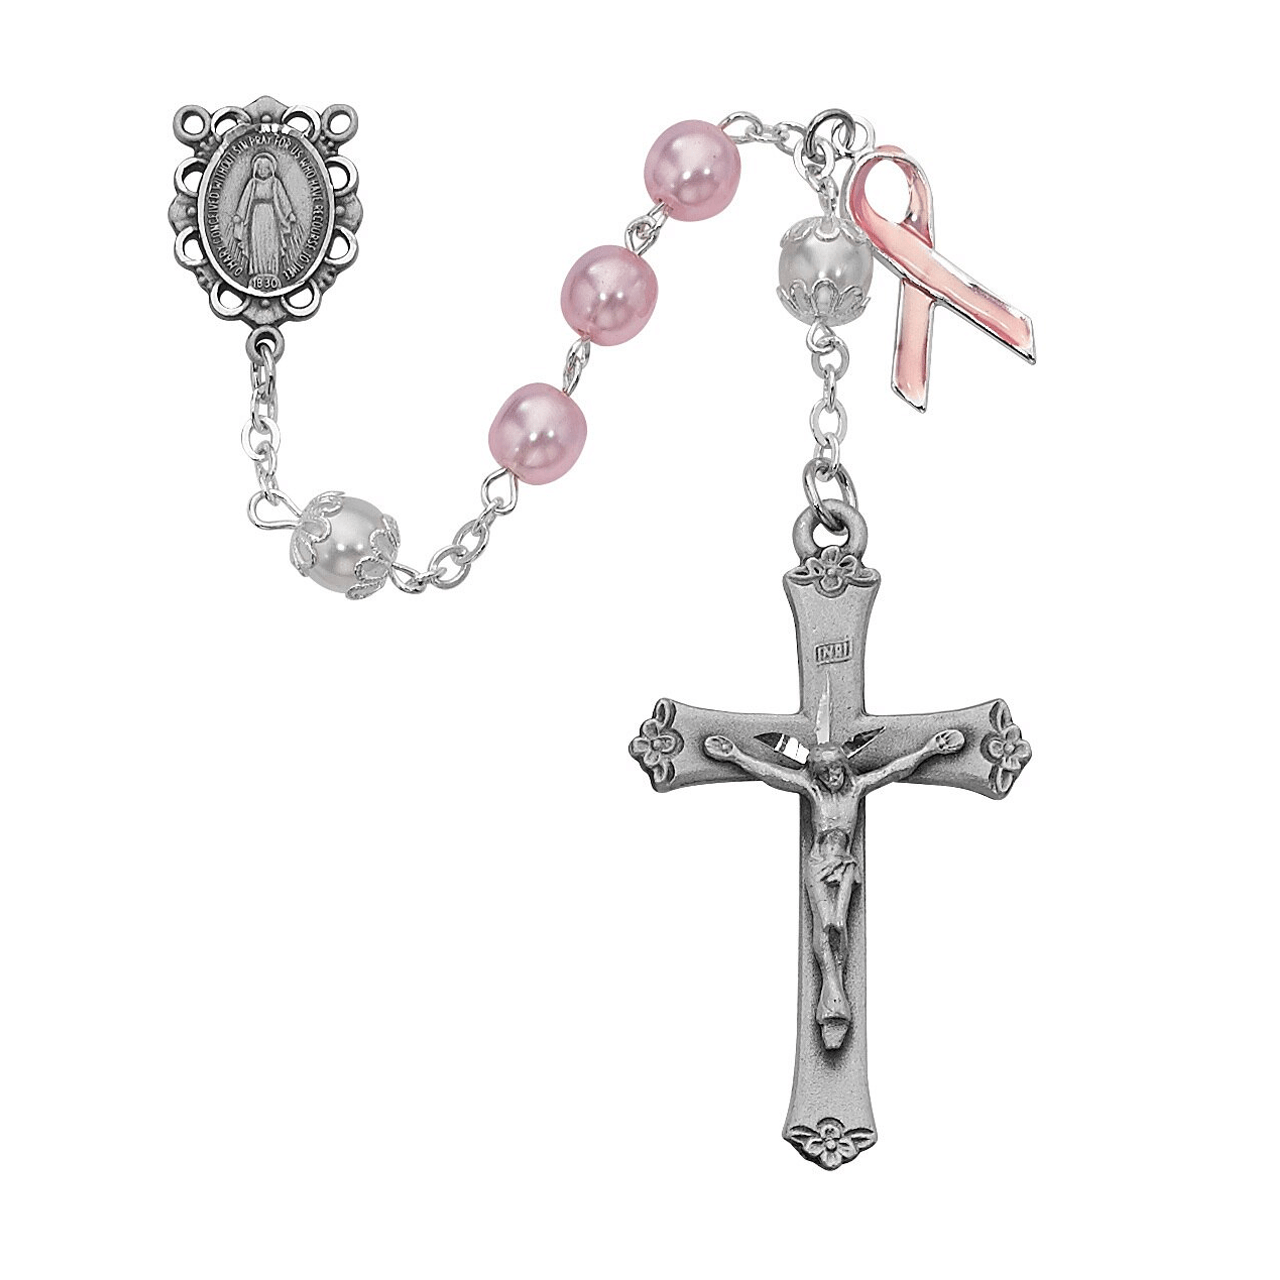 pink ribbon rosary